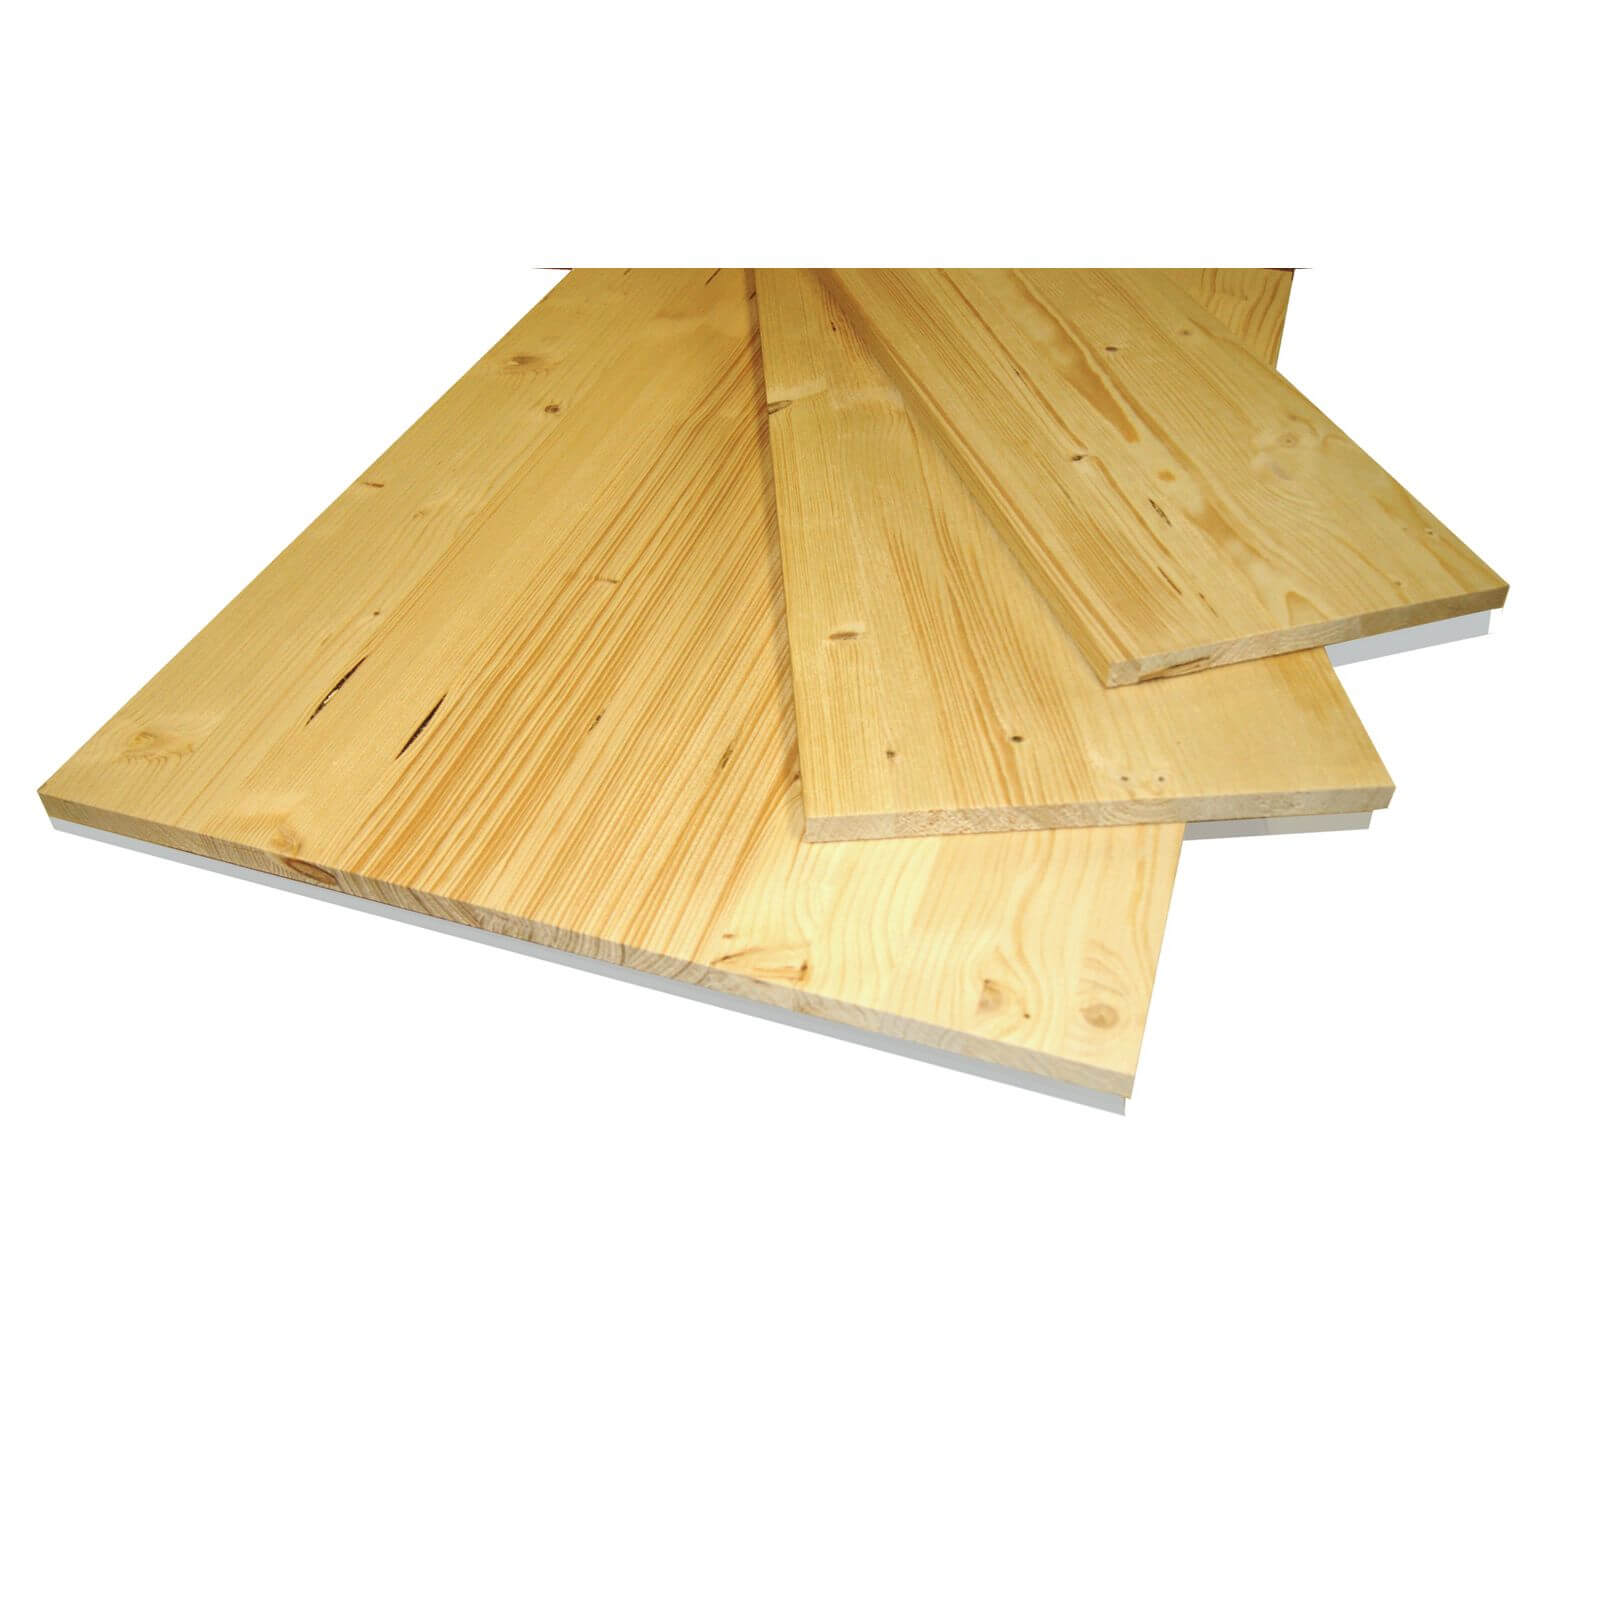 Metsa Wood Solid Spruce Wooden Panel Board 0.85m (18 x 600 x 850mm)